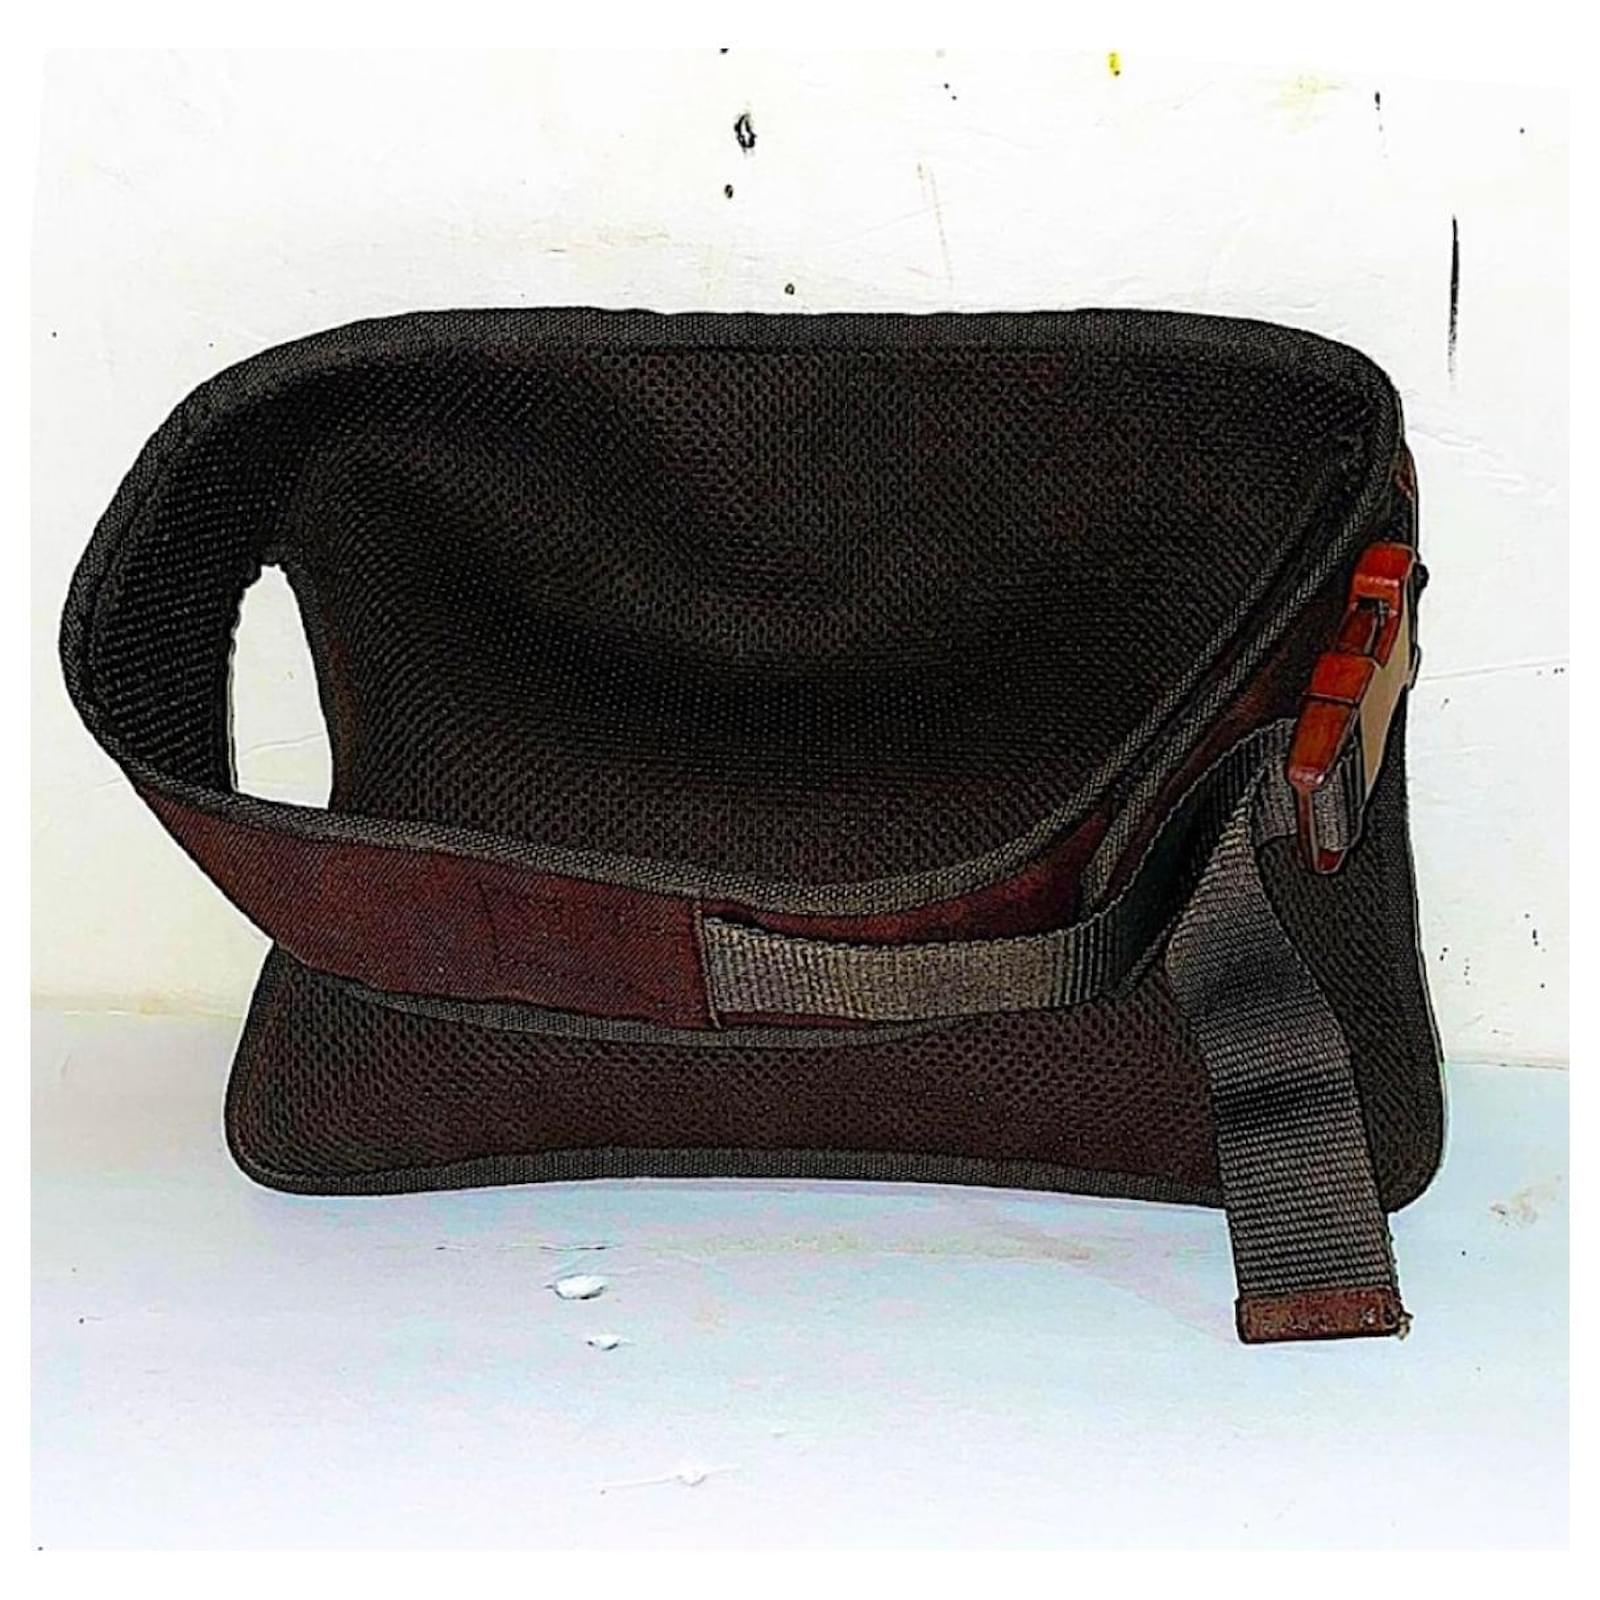 Miu Miu 1999 F/W waist belt bag in suede and mesh